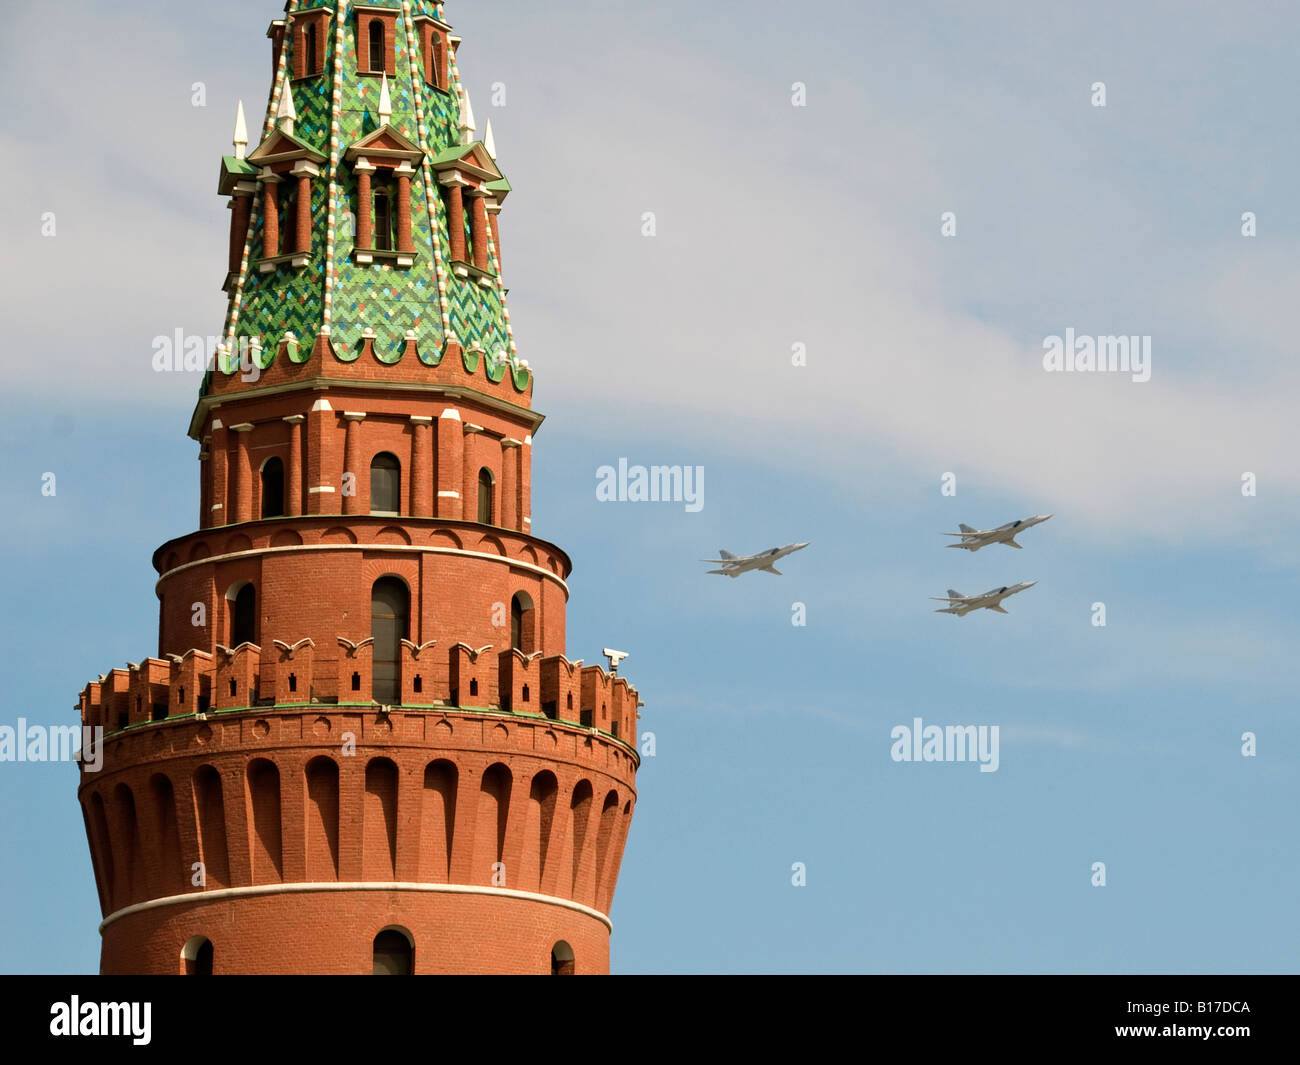 Aviones rusos vuelan en formación sobre el Kremlin de Moscú, durante el desfile del Día de la victoria, 9 de mayo de 2008 Foto de stock